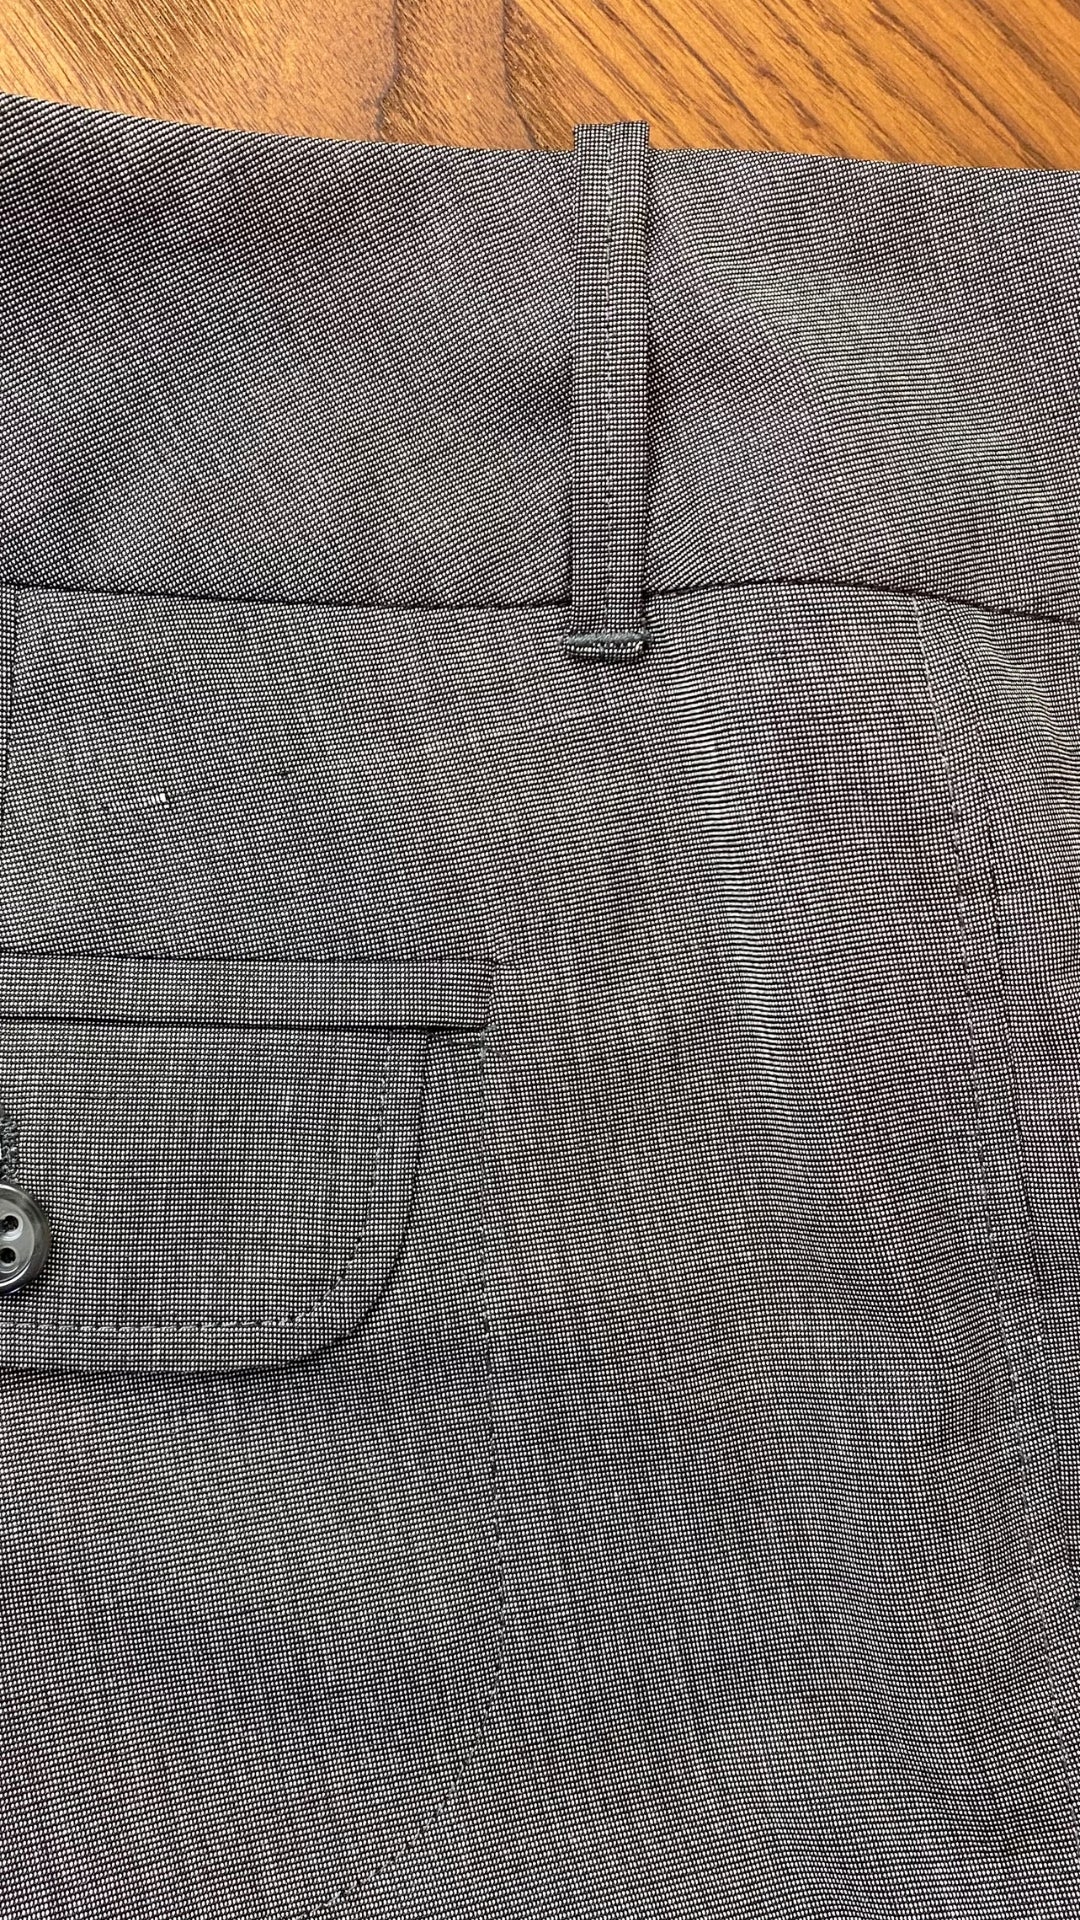 Pantalon gris droit fluide Gardeur, taille estimée à 6. Vue de la ligne dans le tissu.